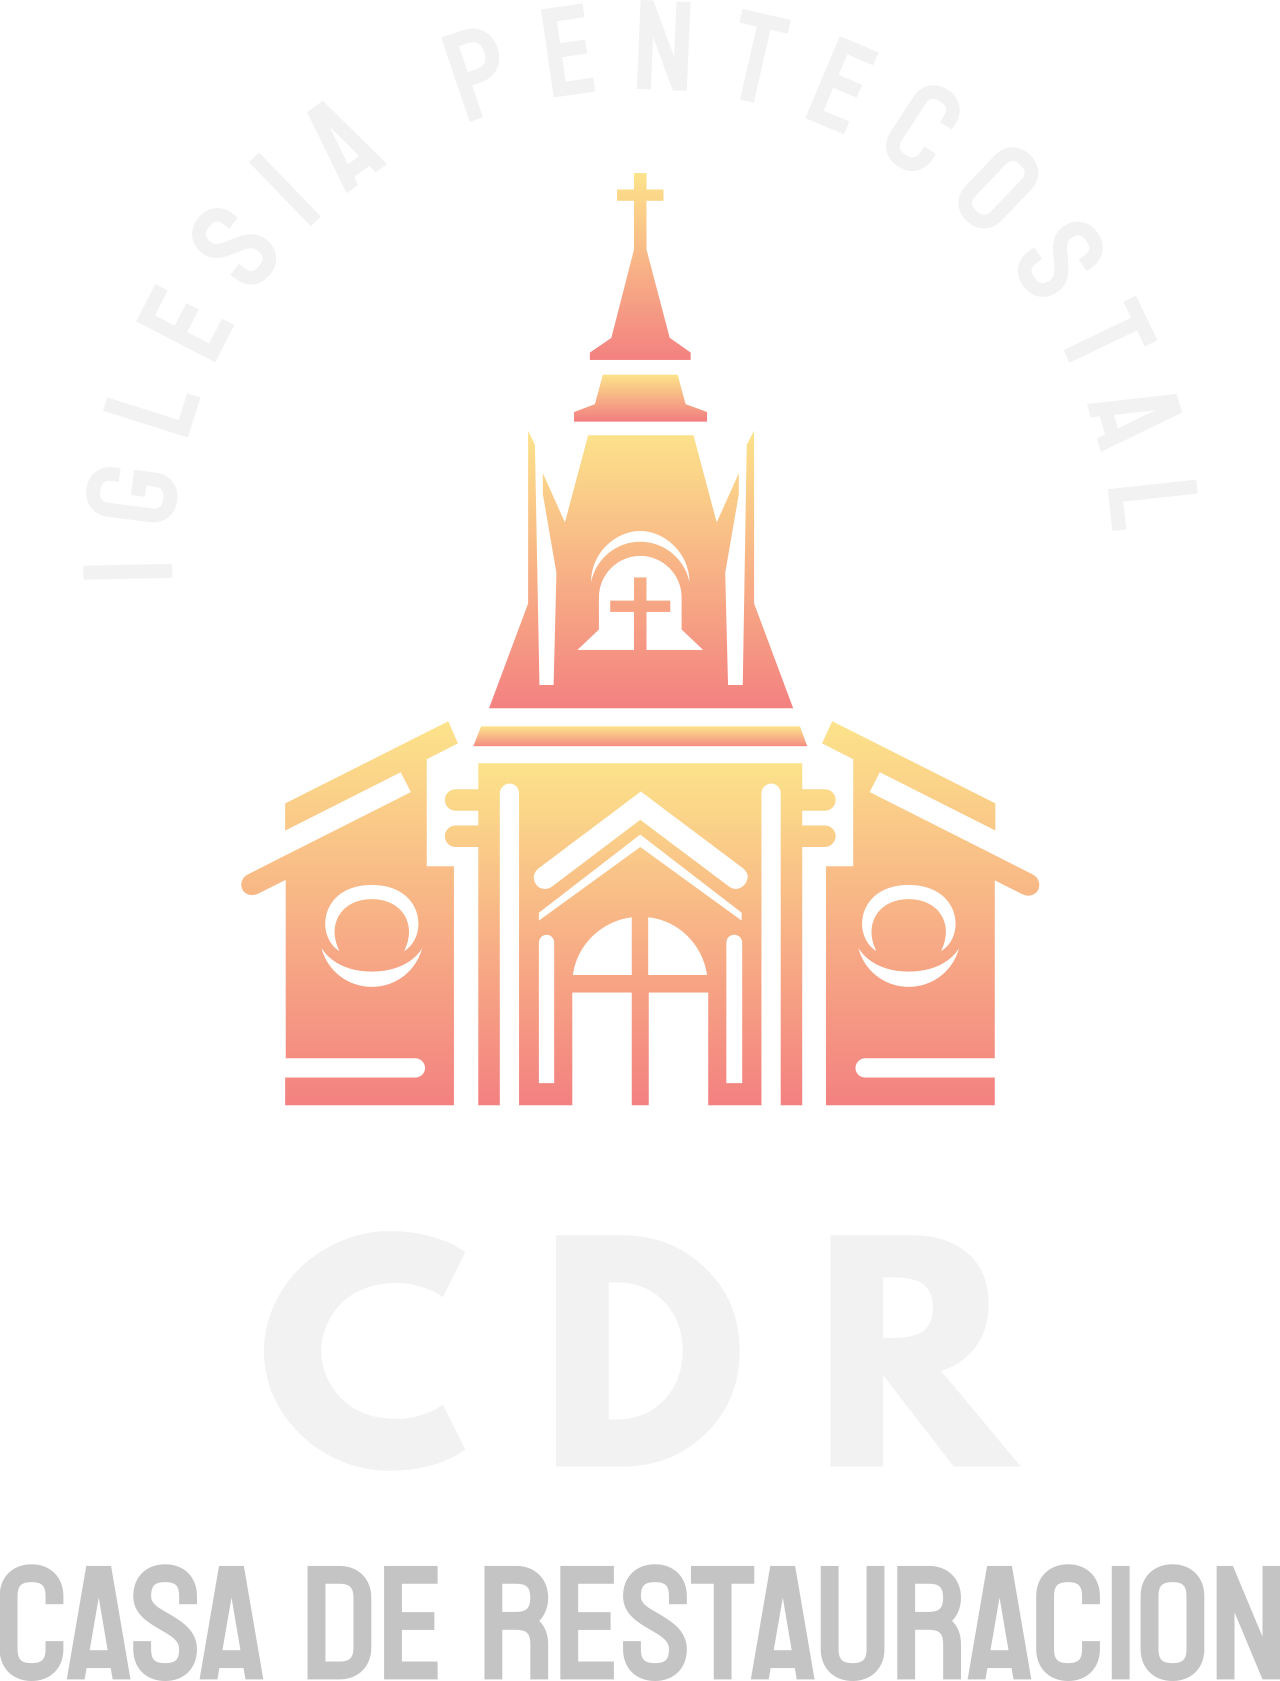 Iglesia Pentecostal 's logo